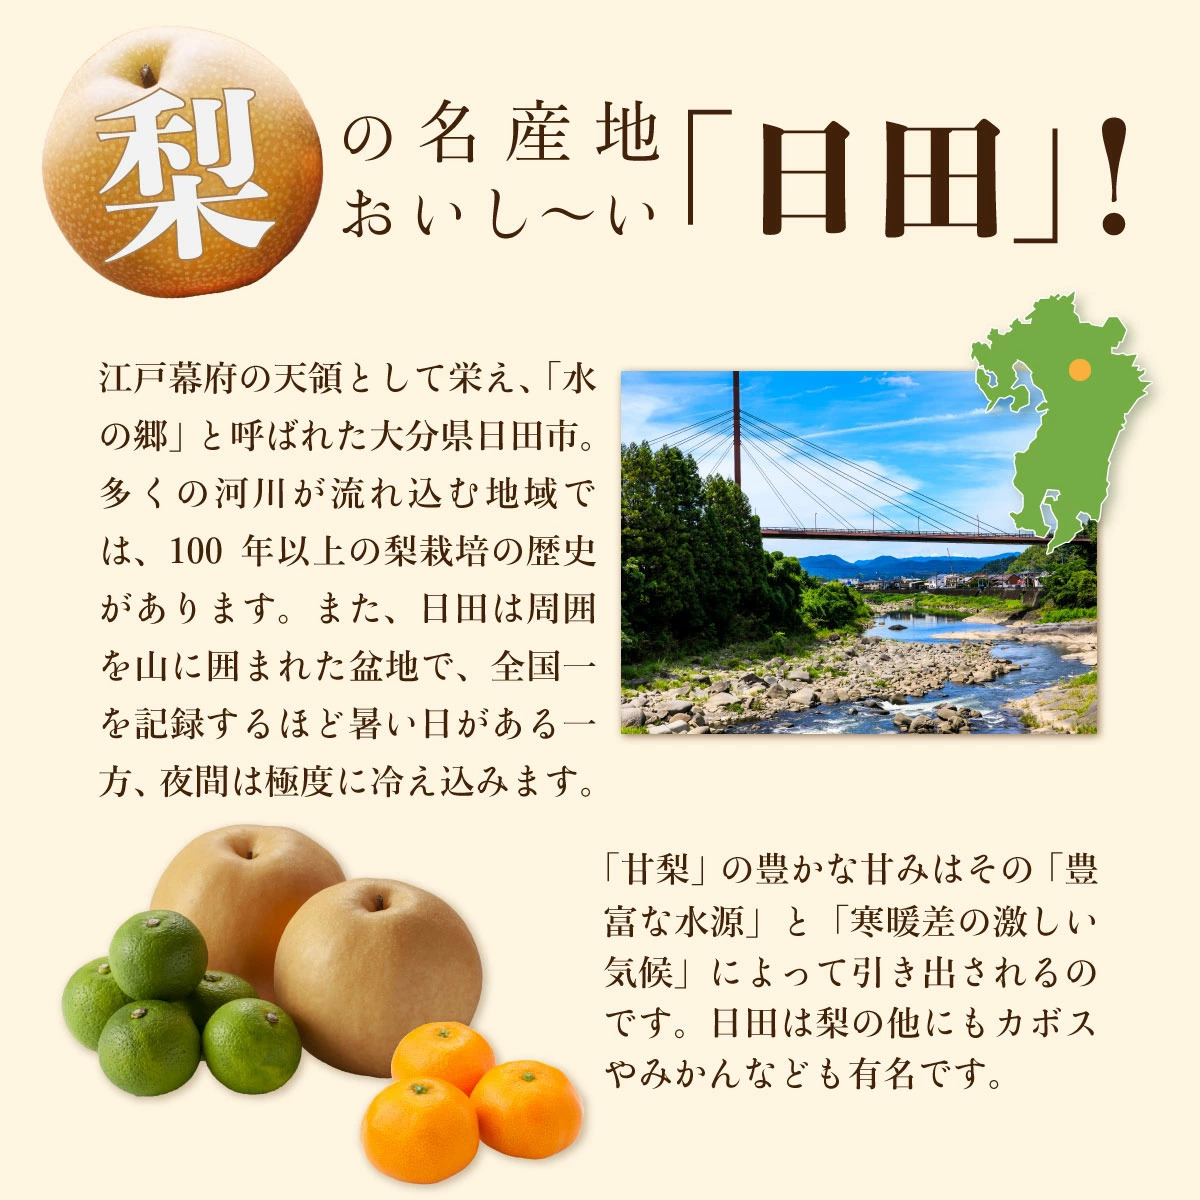 日田の自然豊かな景観